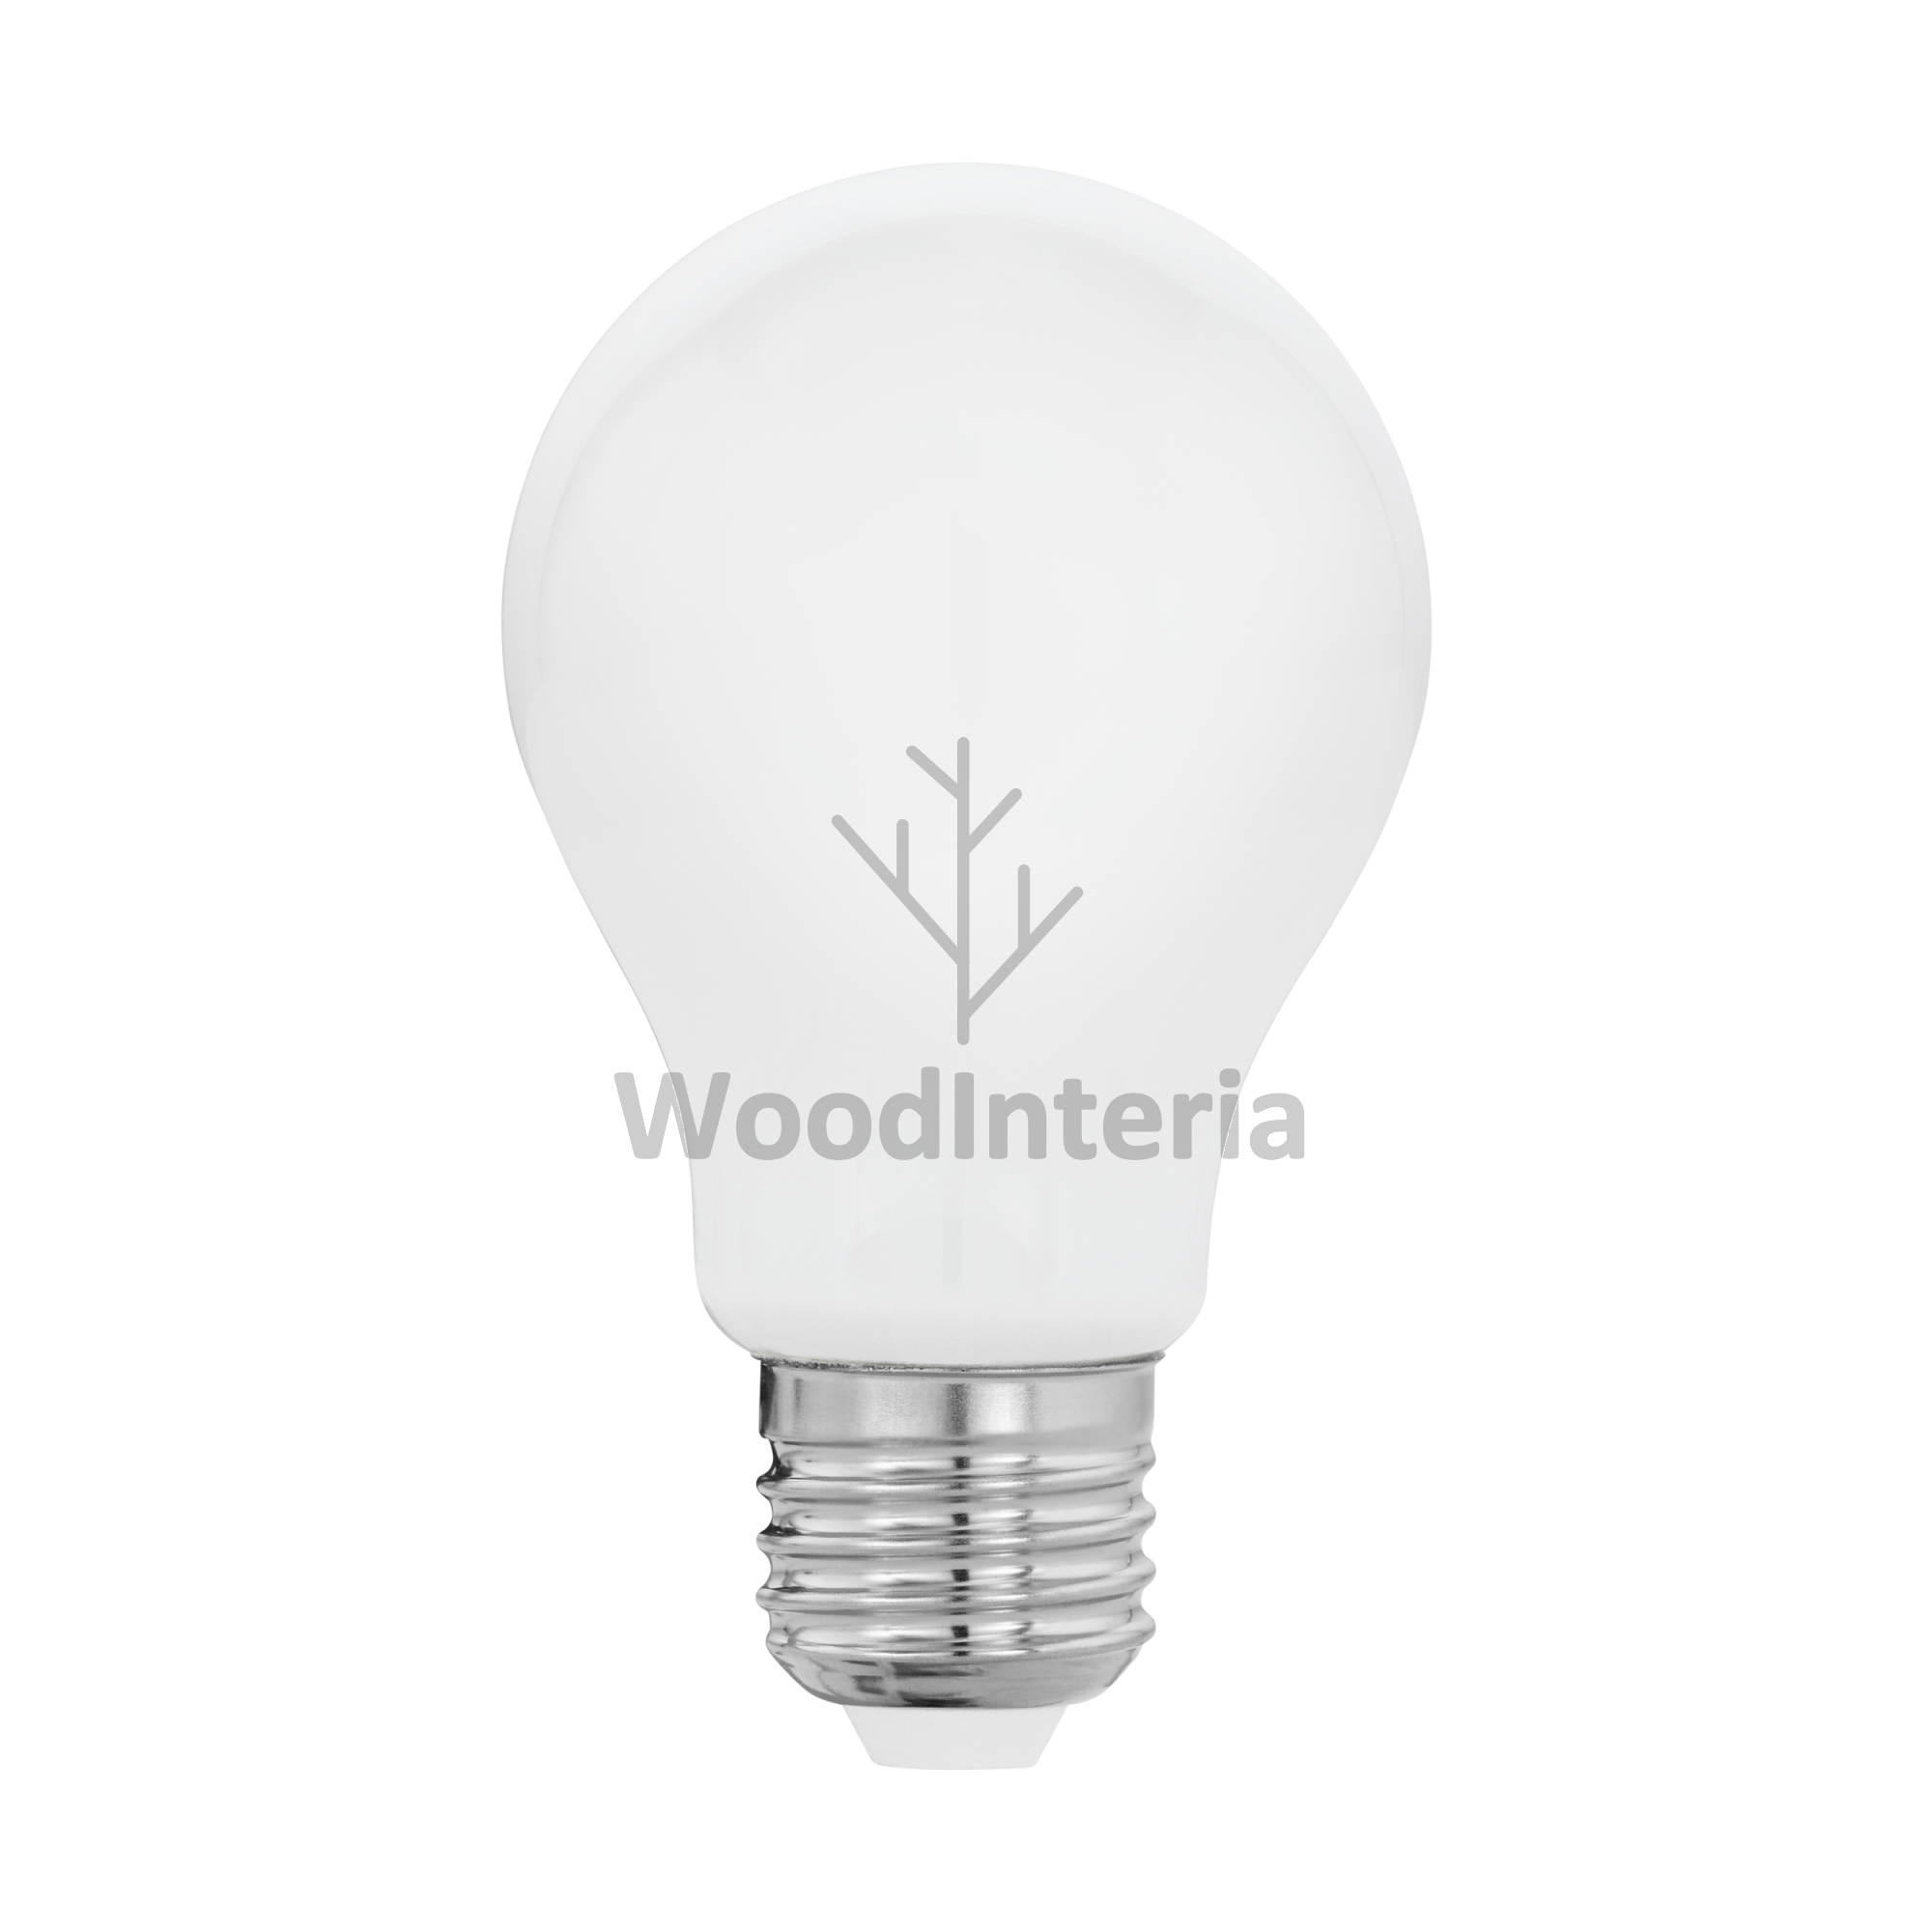 фото лампочка white bulb #2 led в скандинавском интерьере лофт эко | WoodInteria